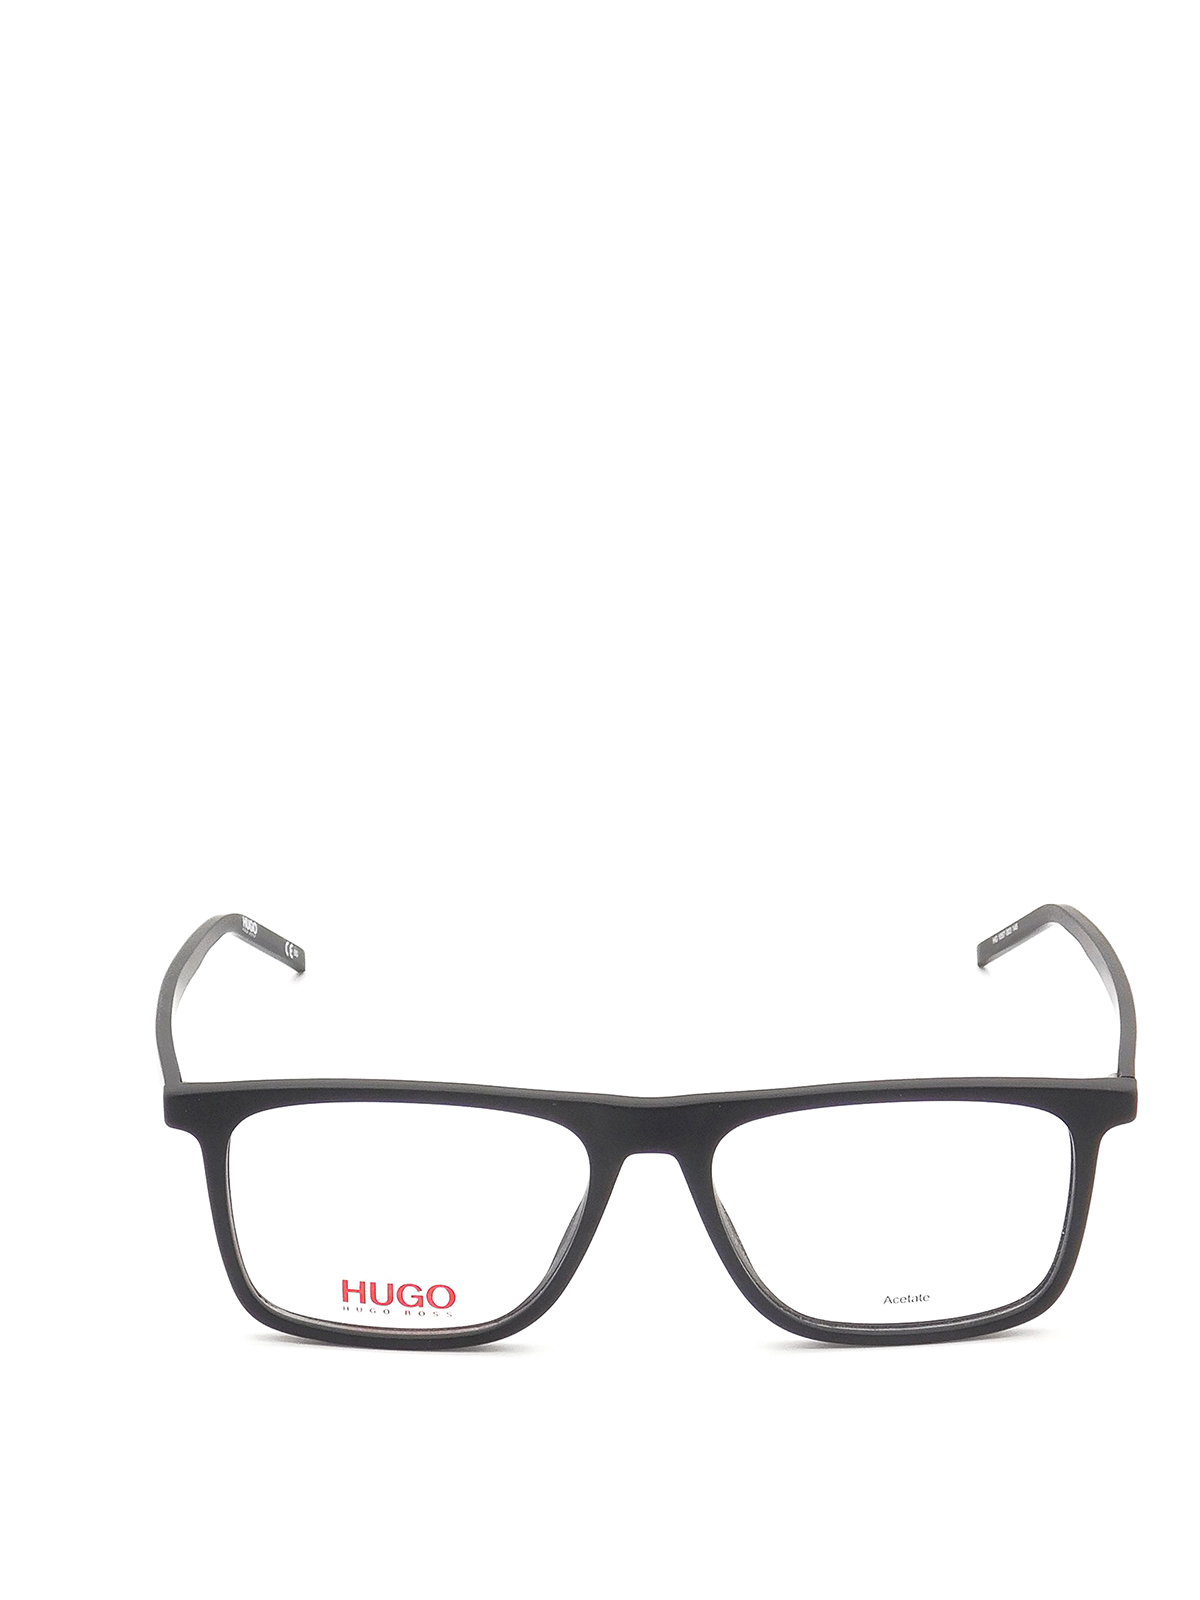 Hugo Boss - Black acetate square eyeglasses - Glasses ...